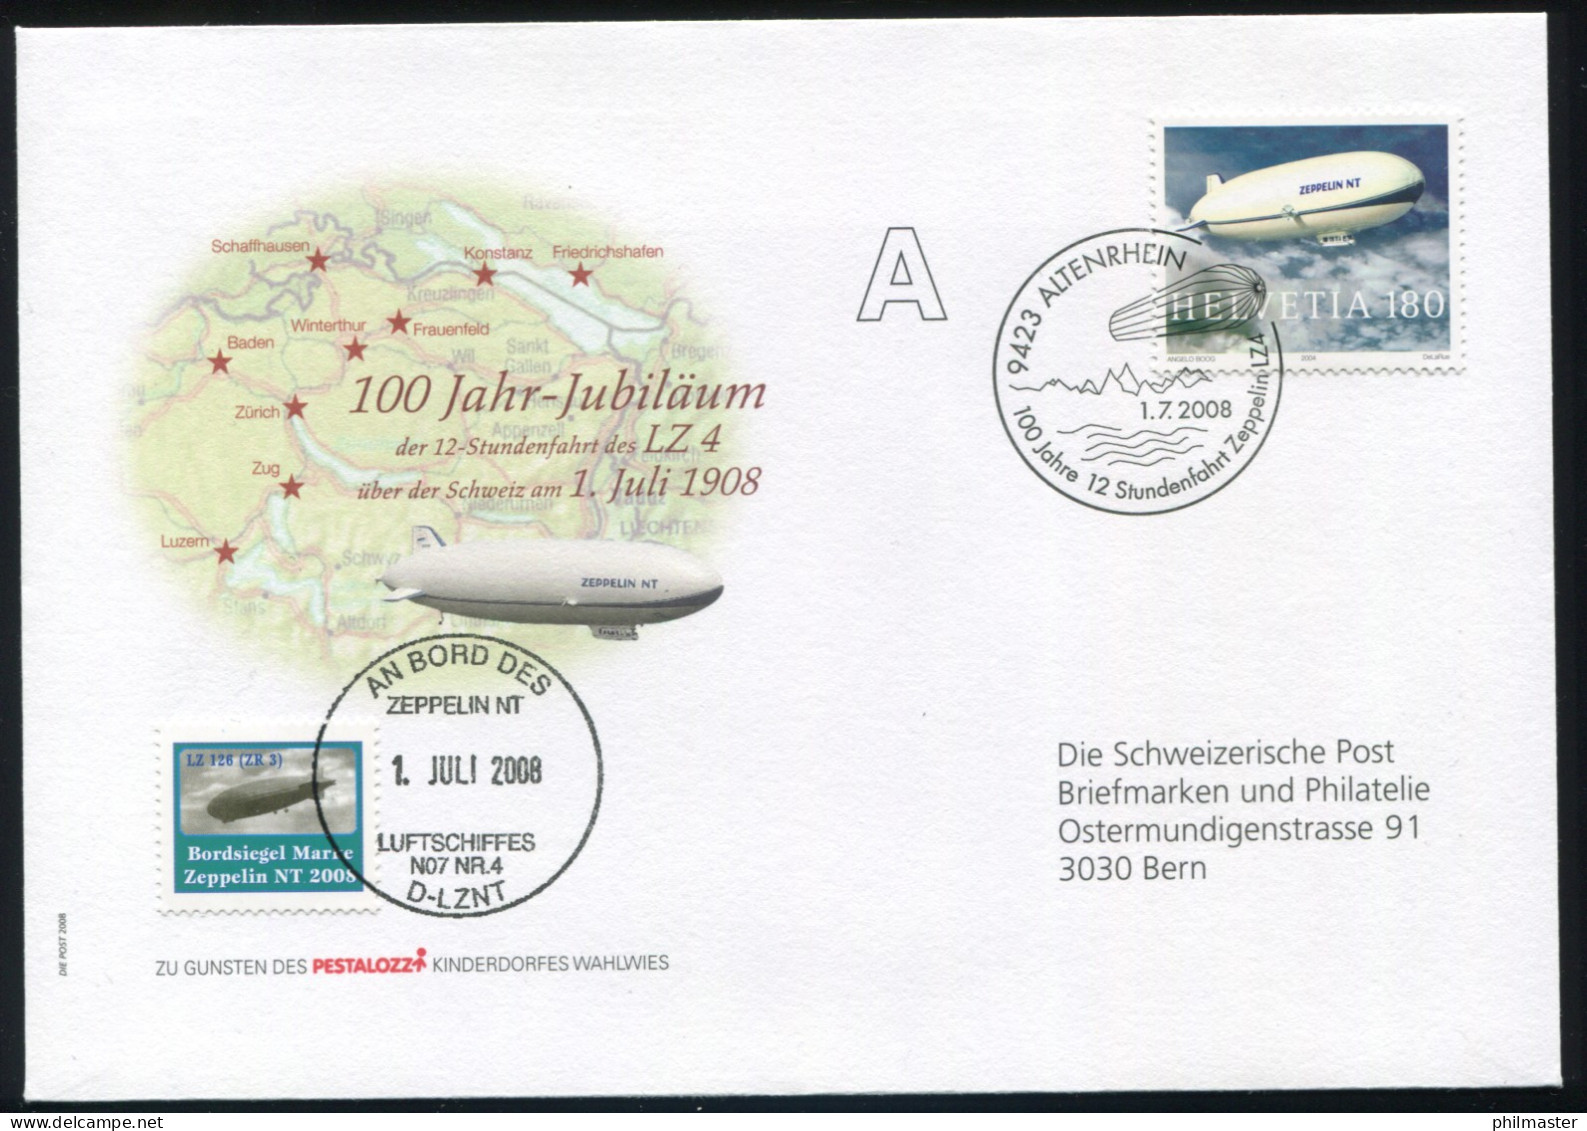 Luftschiffspost DKL 116 Fahrt LZ4 D-LZNT über Schweiz SSt ALTENRHEIN 1.7.2008 - Zeppelins